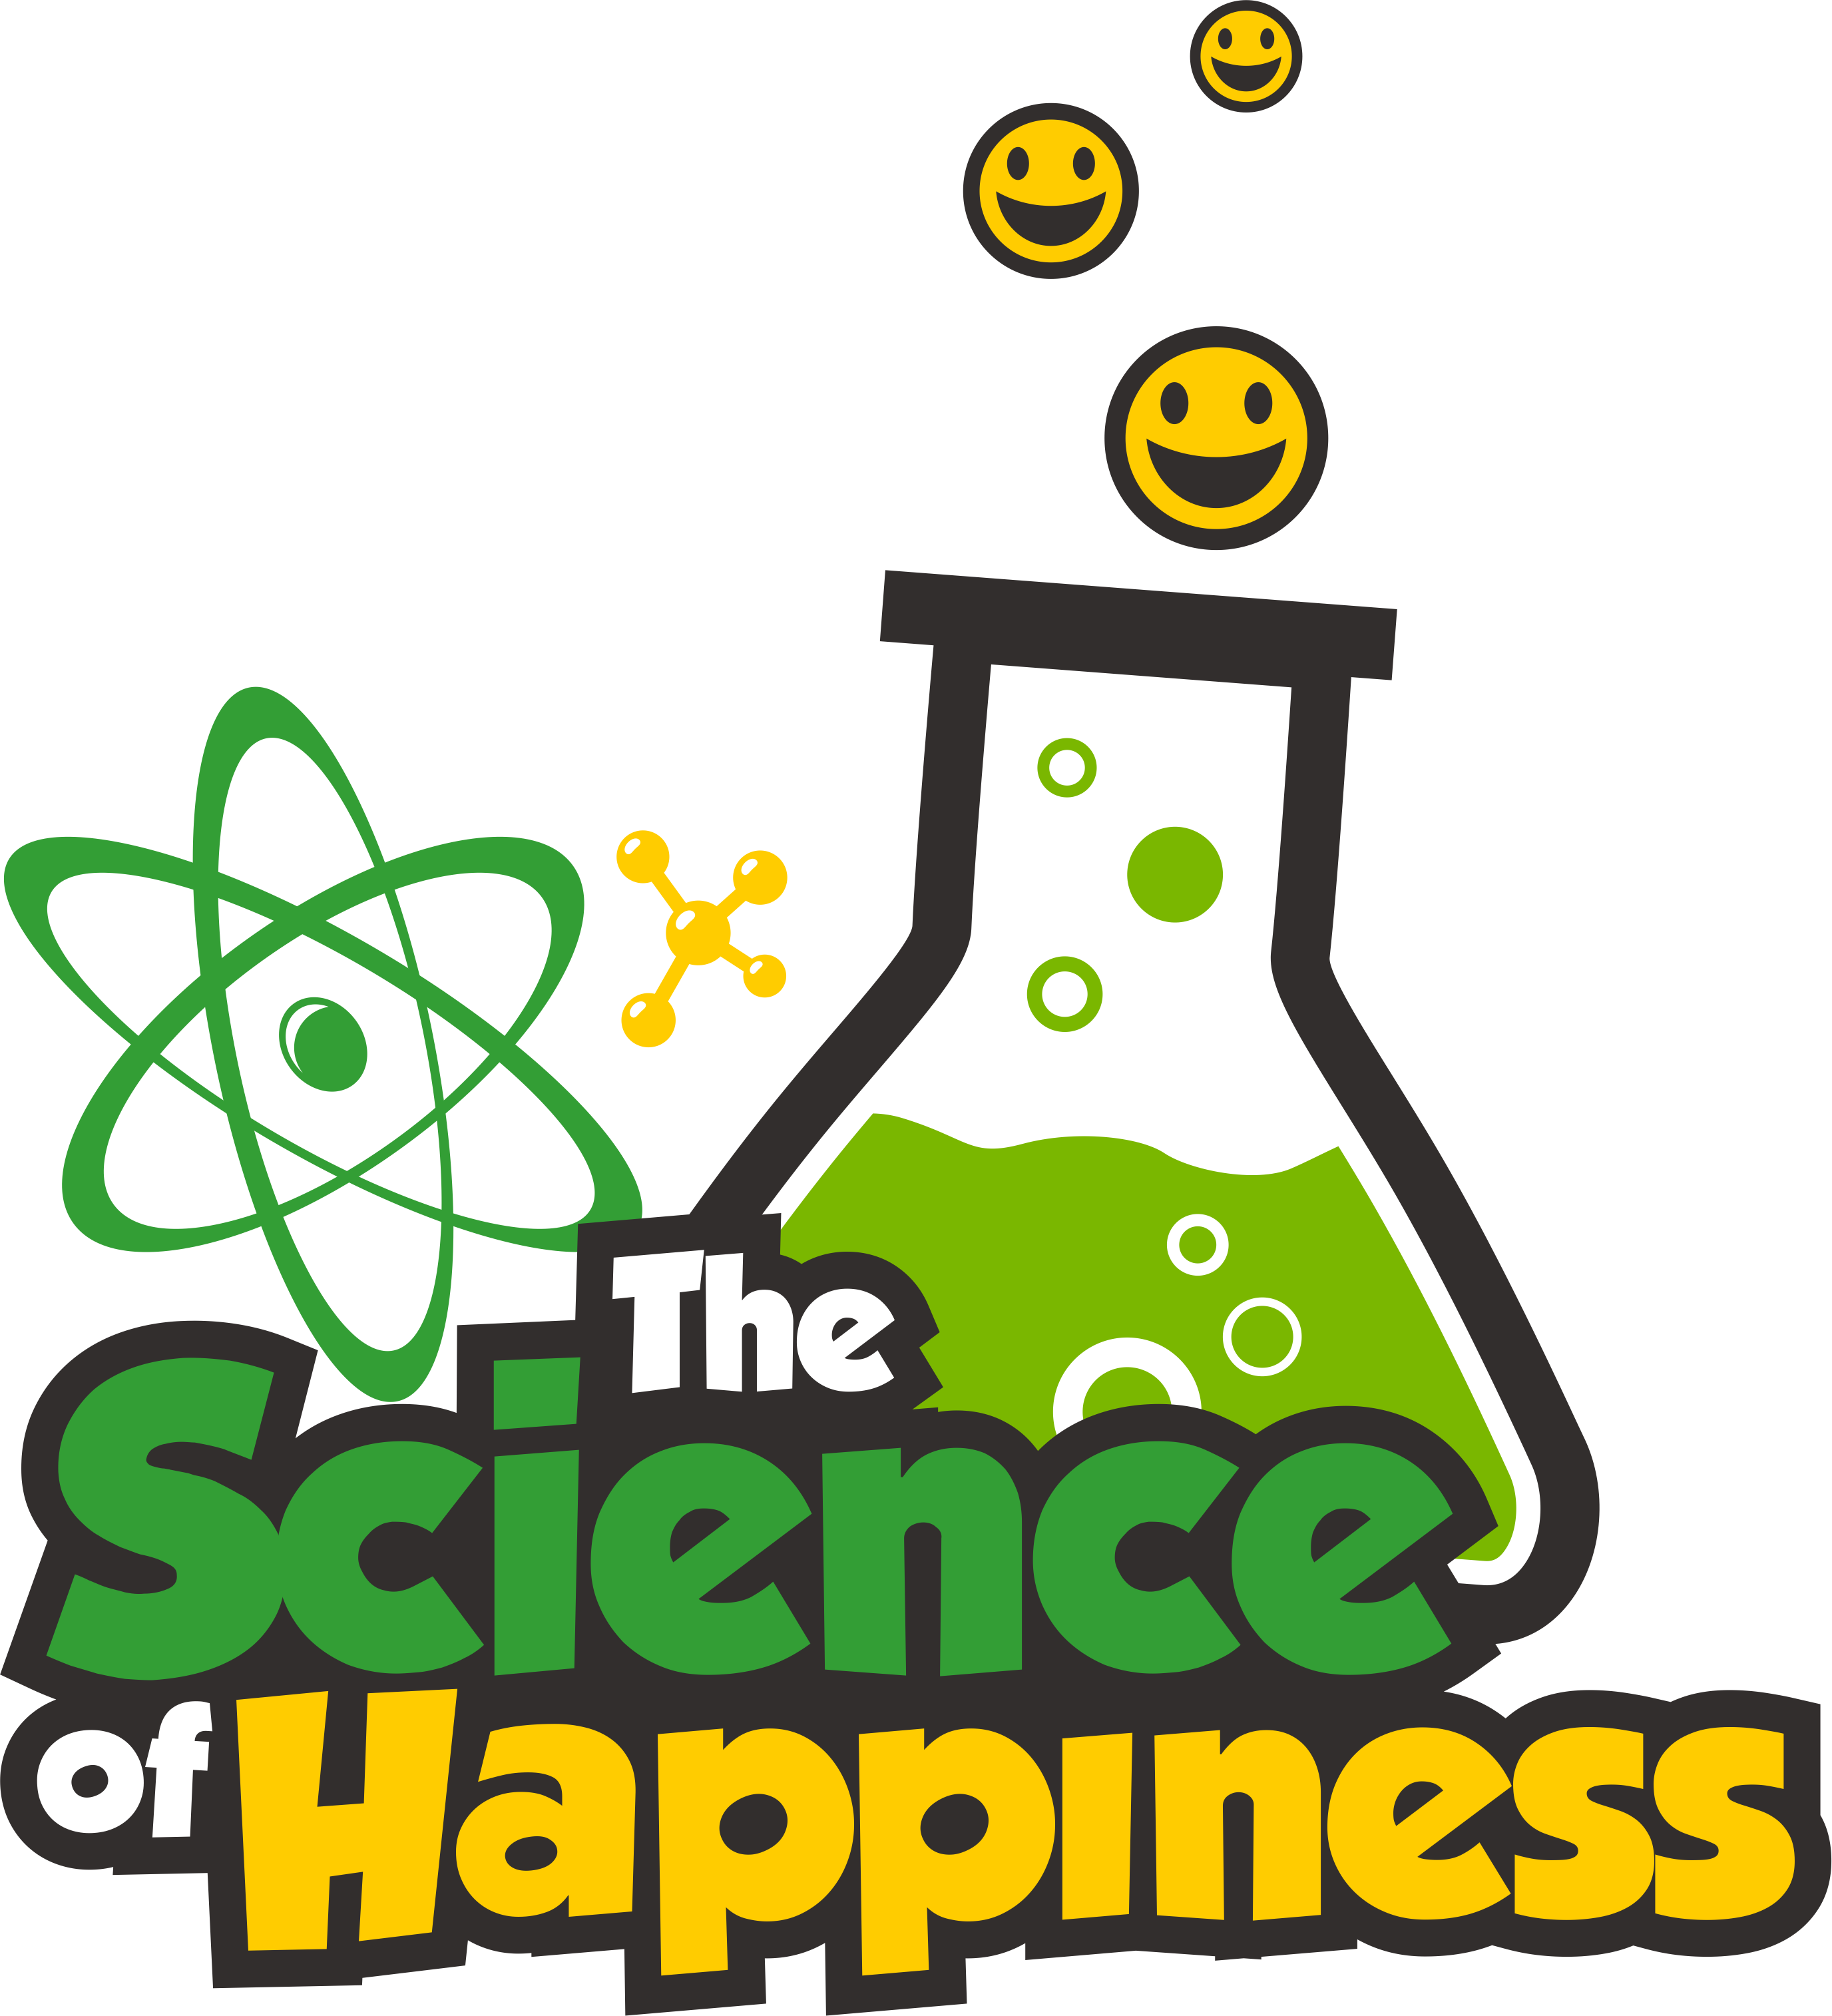 The Science Of Happiness - Science Of Happiness (2752x3028)